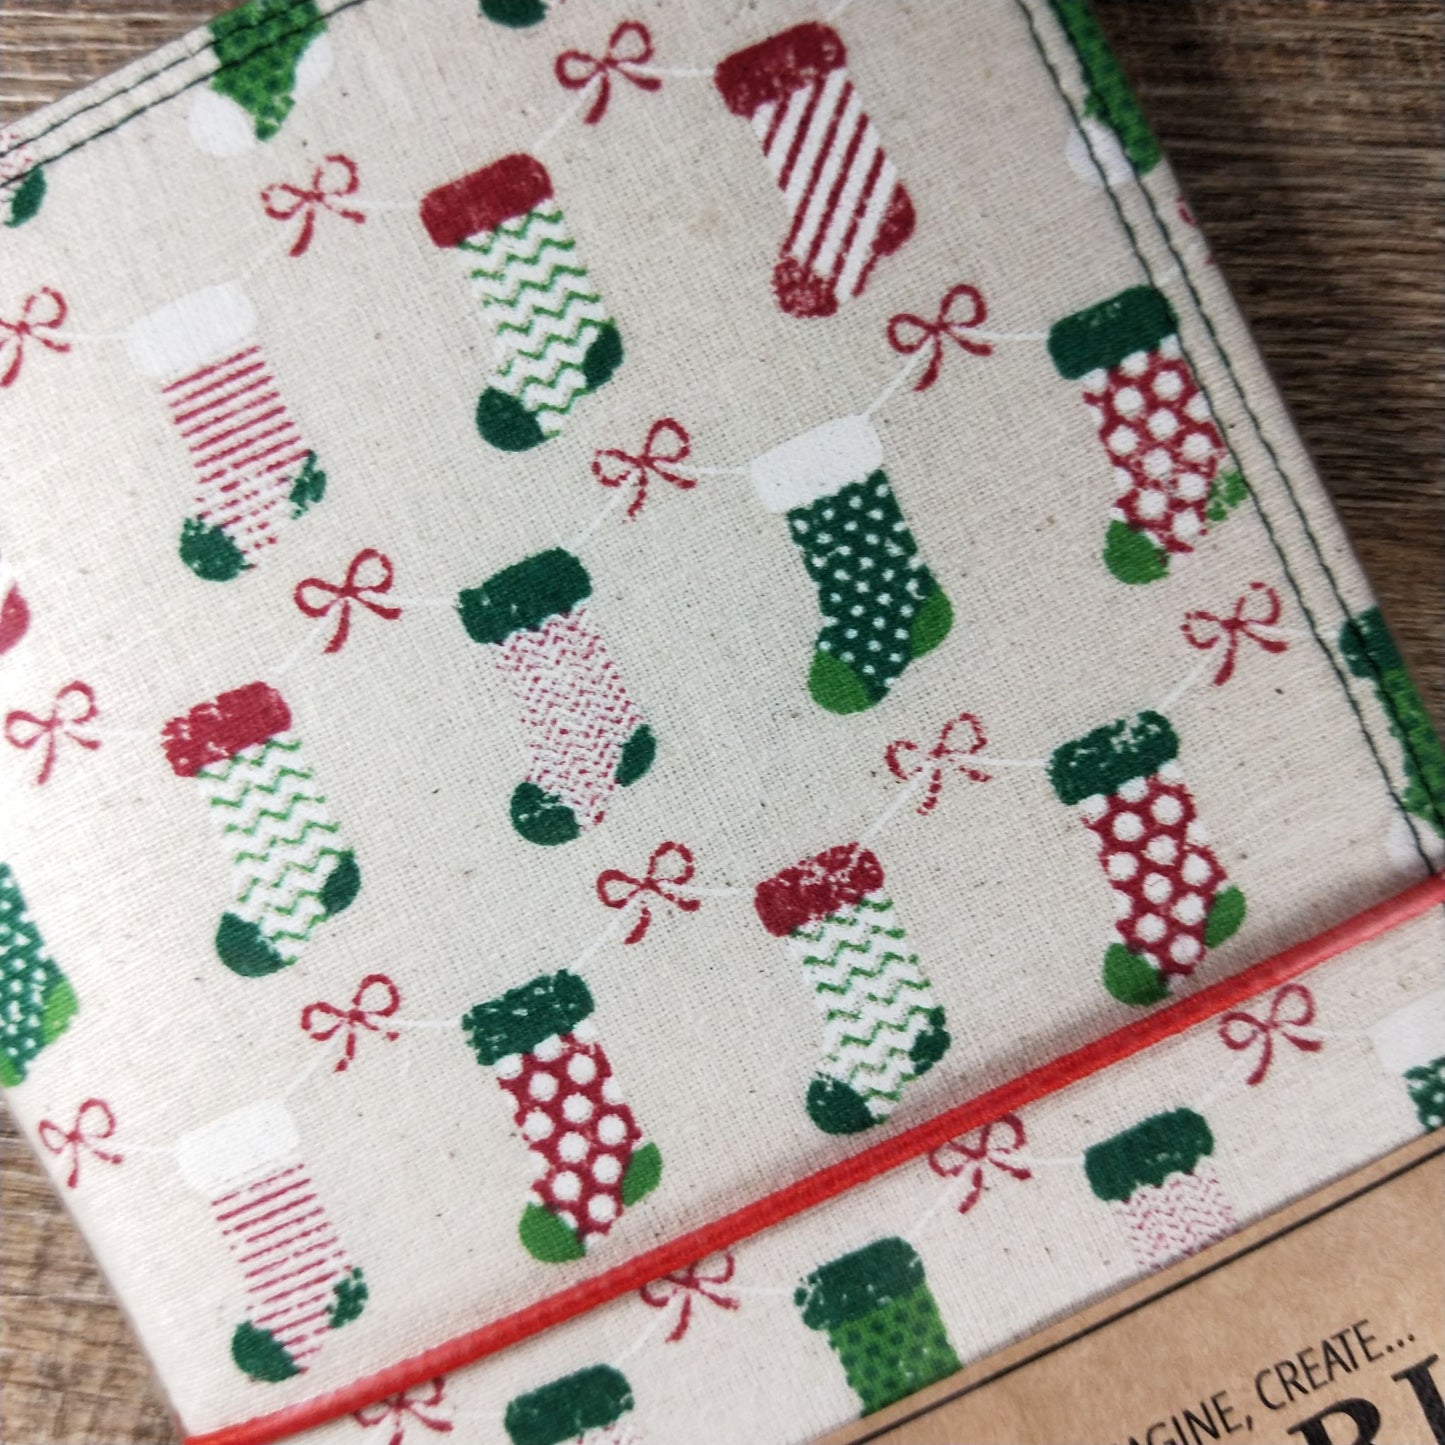 Wilddori Traveler's Notebook Cover Calico Christmas Stocking